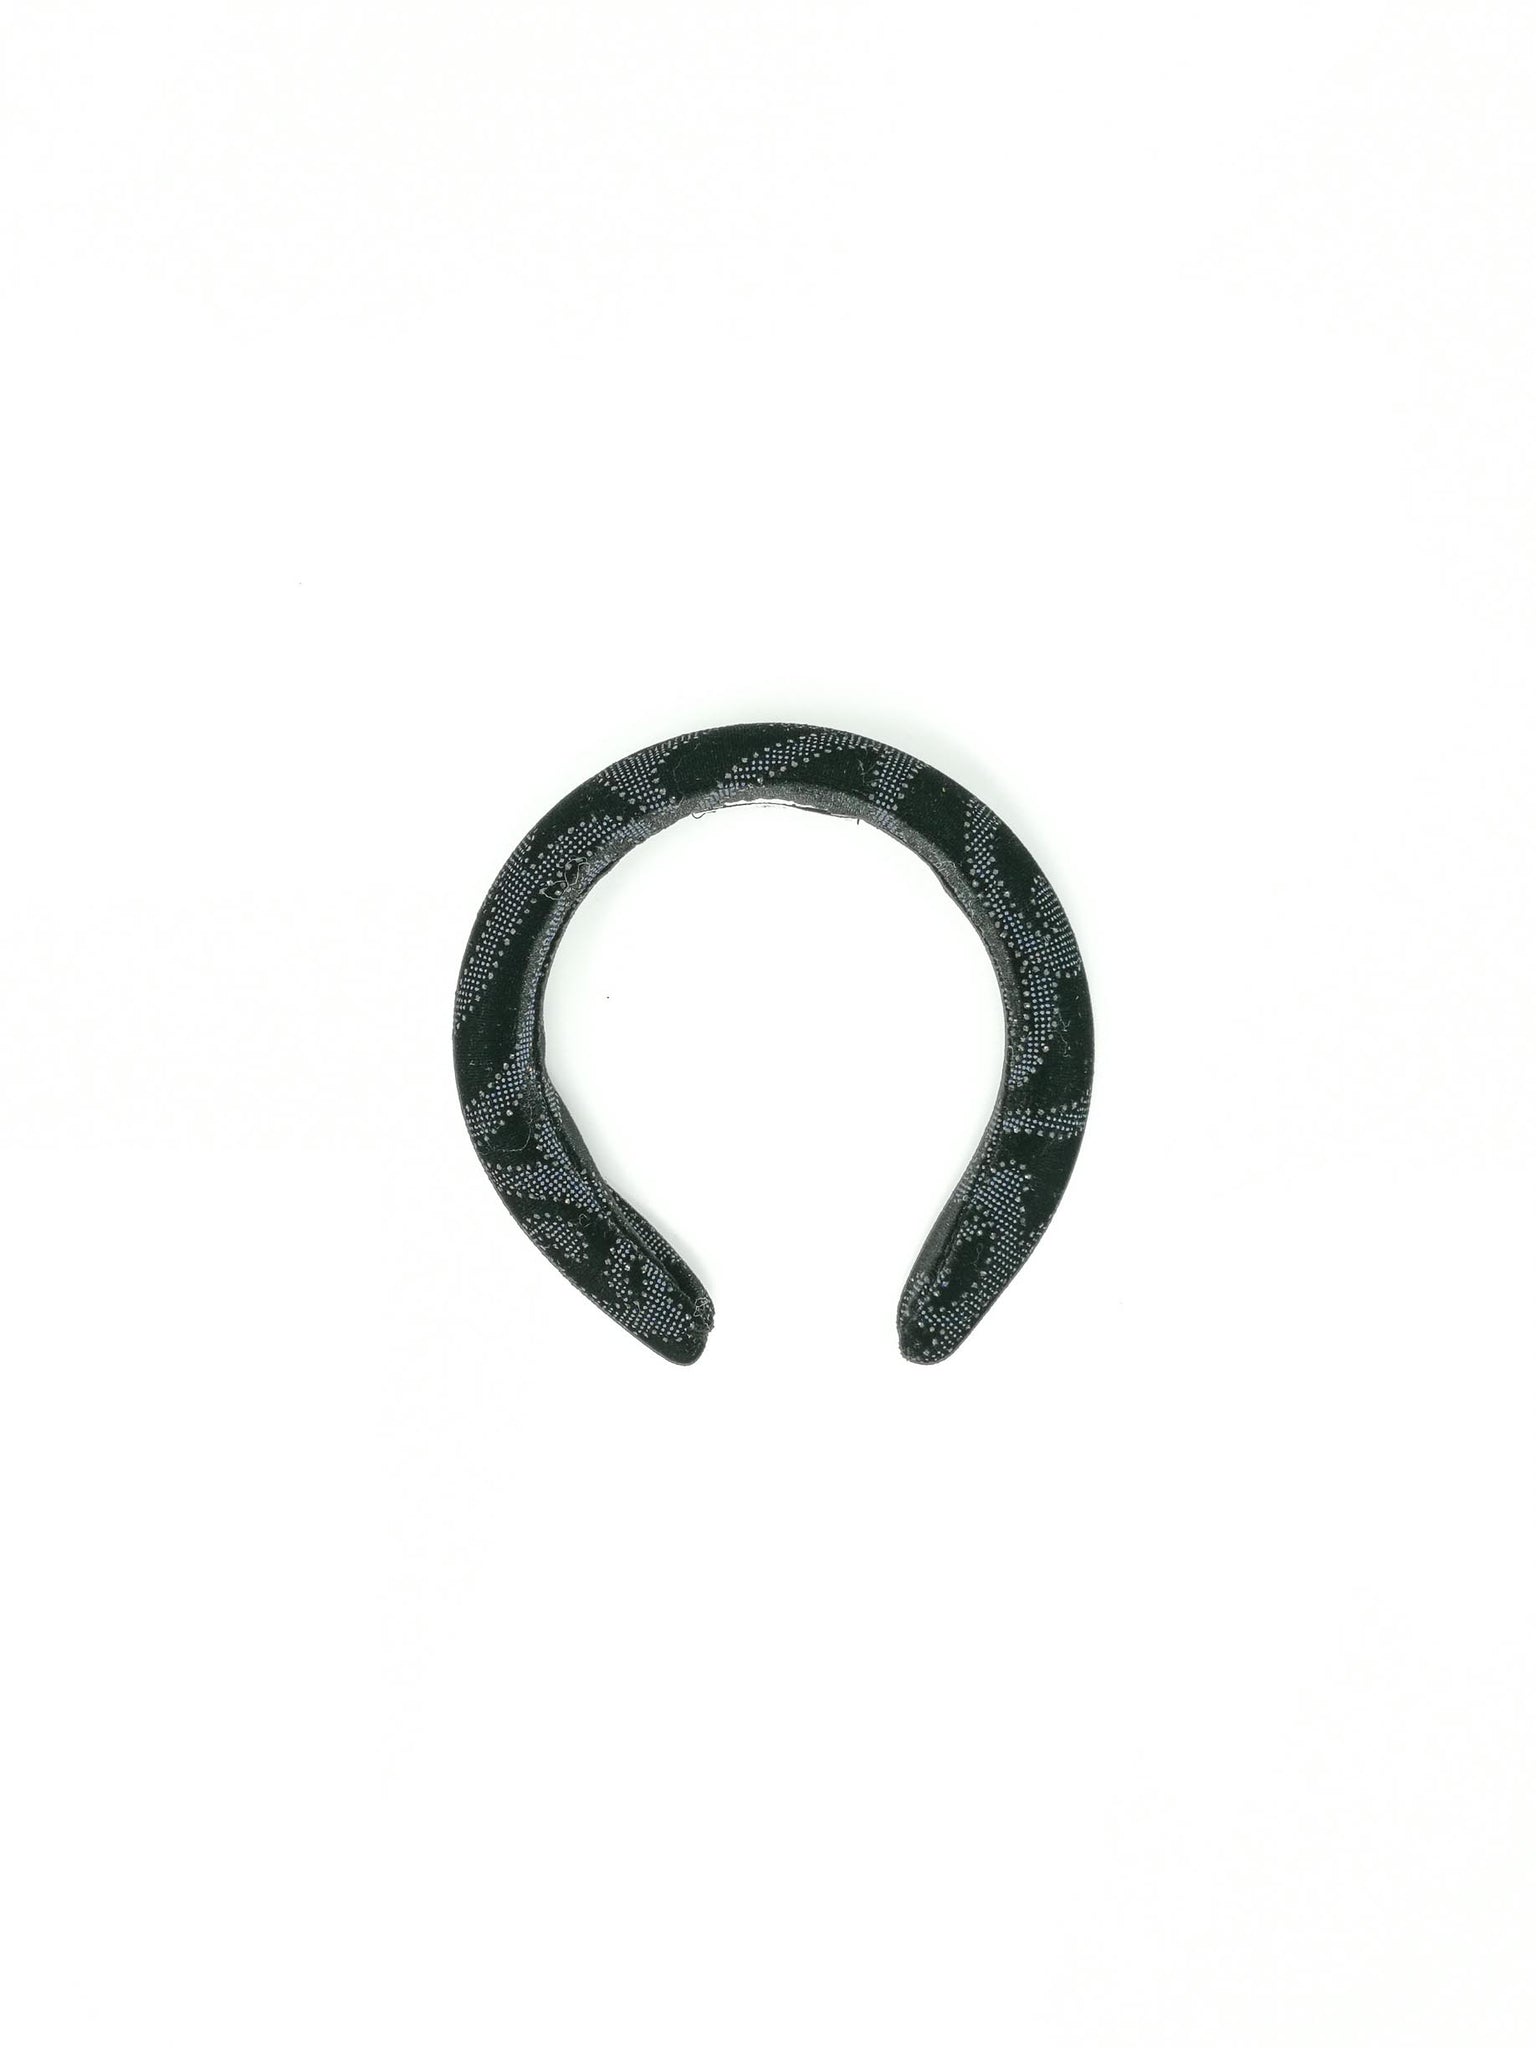 Black devoré velvet padded hairband with glitter